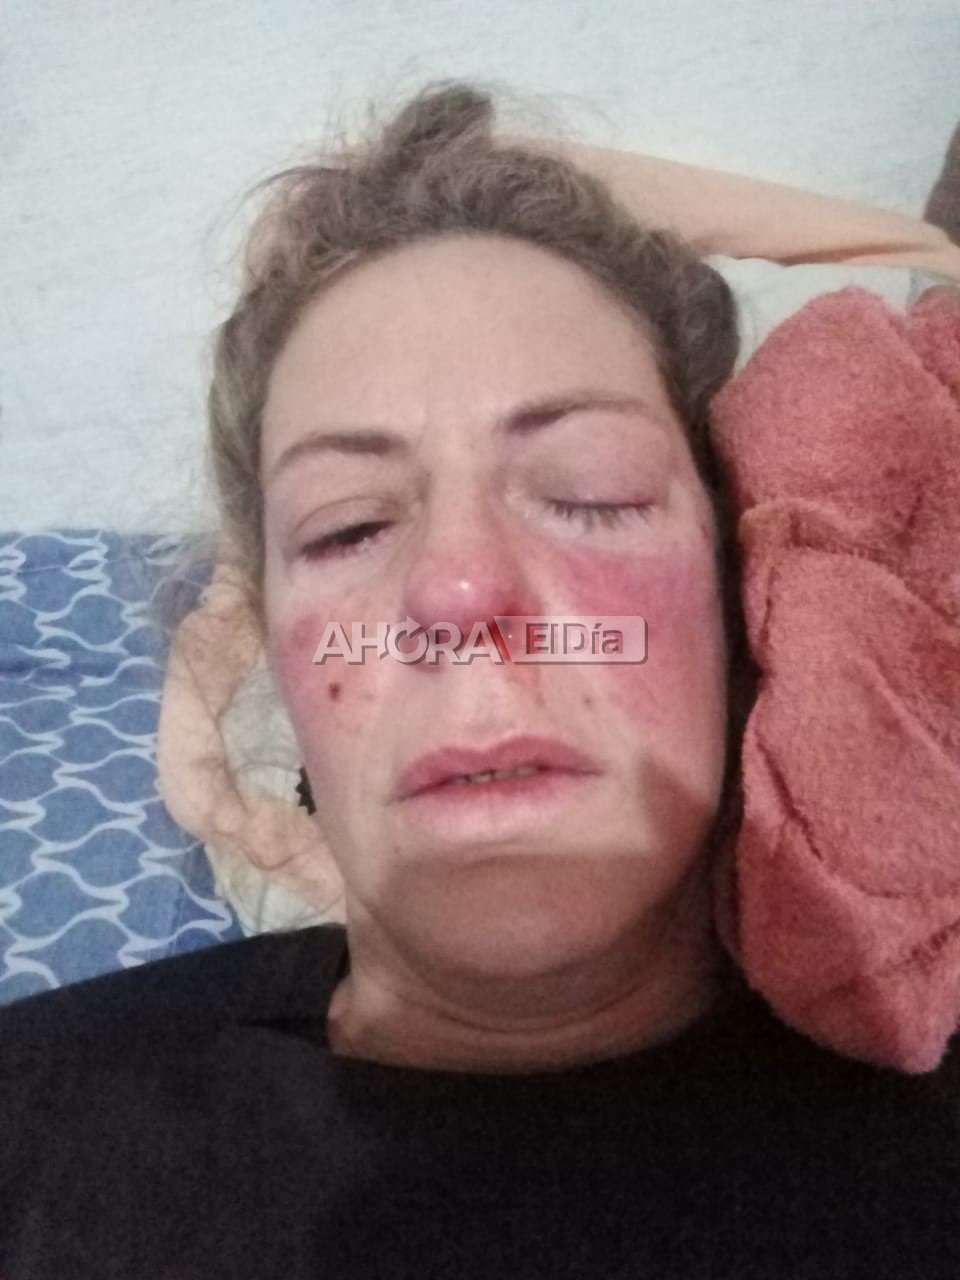 Horror en Gualeguaychú: Su ex pareja la golpeó y ahora deberán operarla para reconstruirle la cara